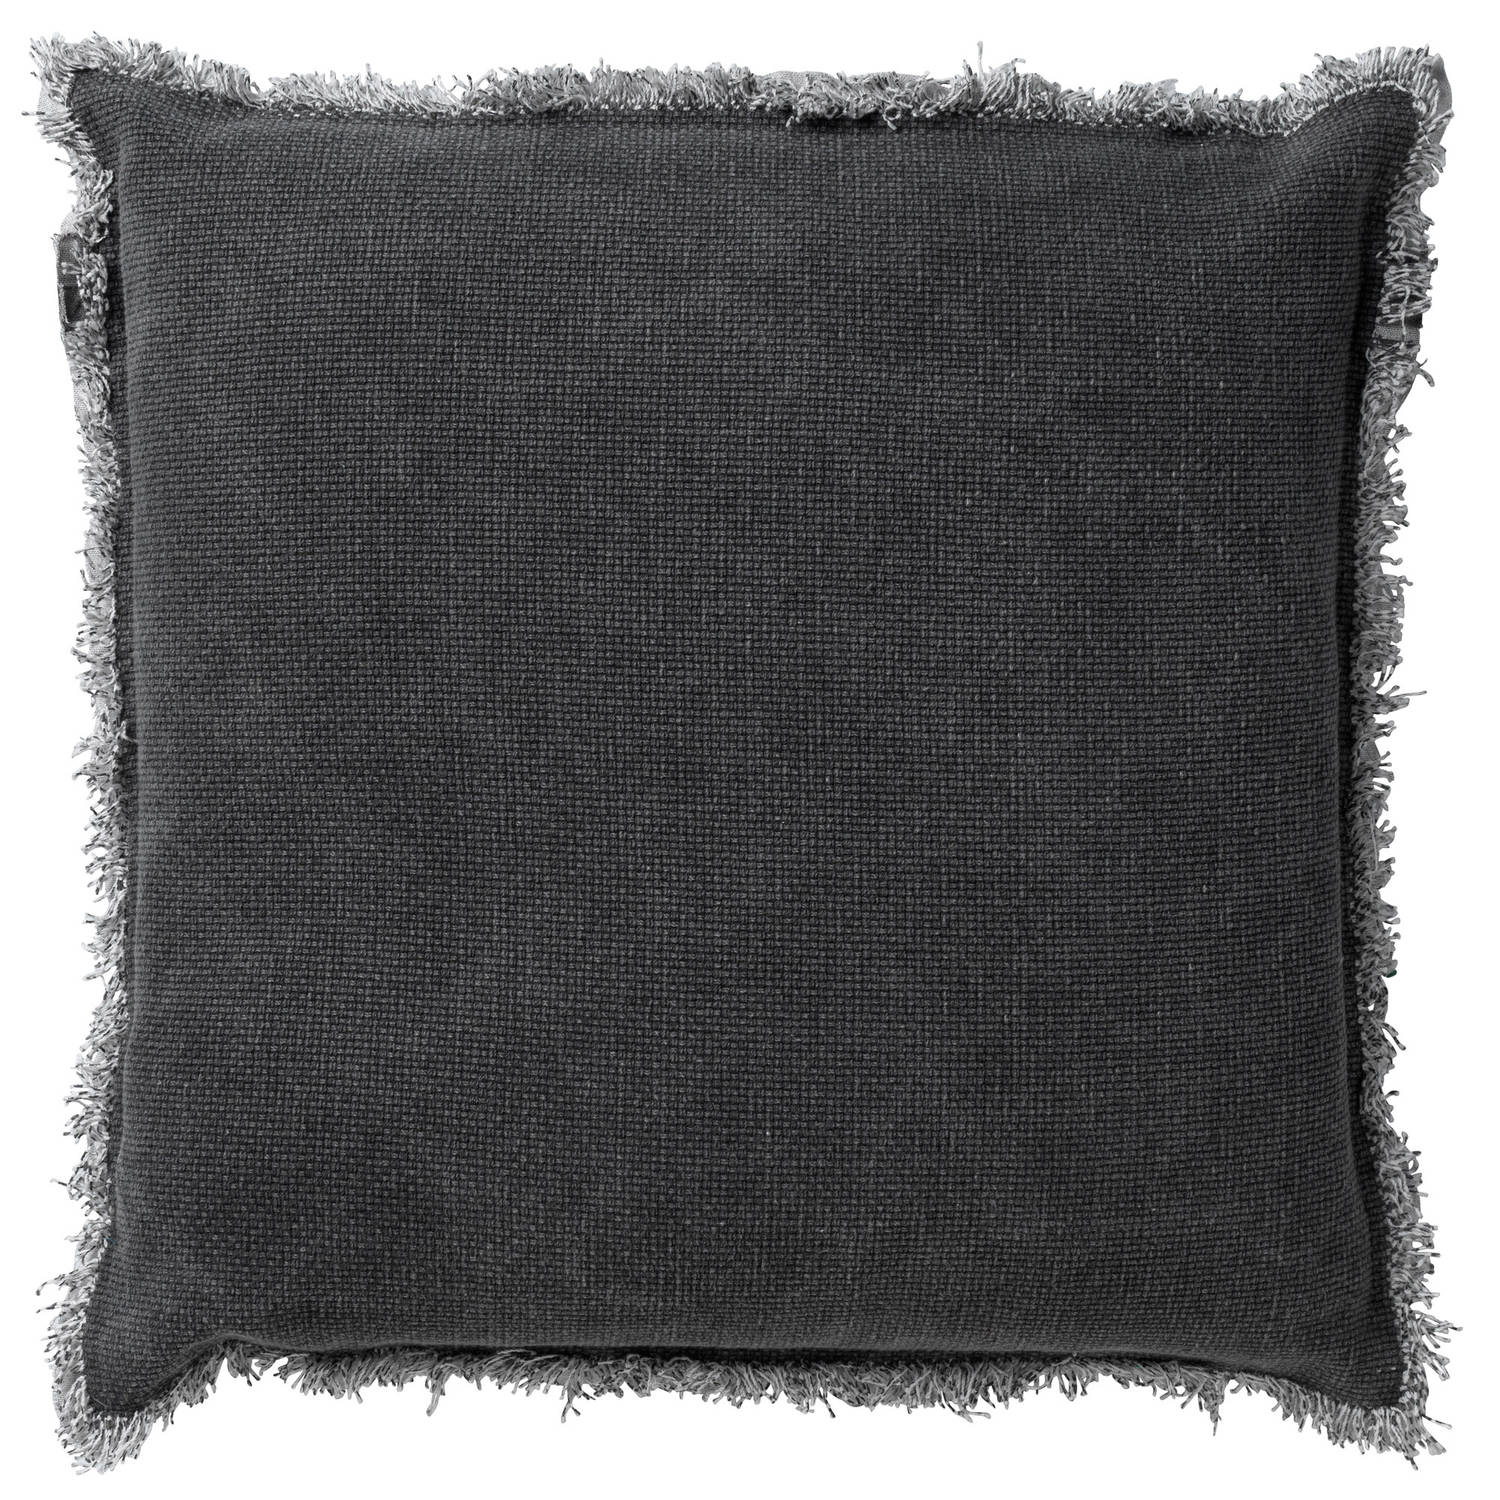 Kussenhoes Burto 60x60 charcoal grey